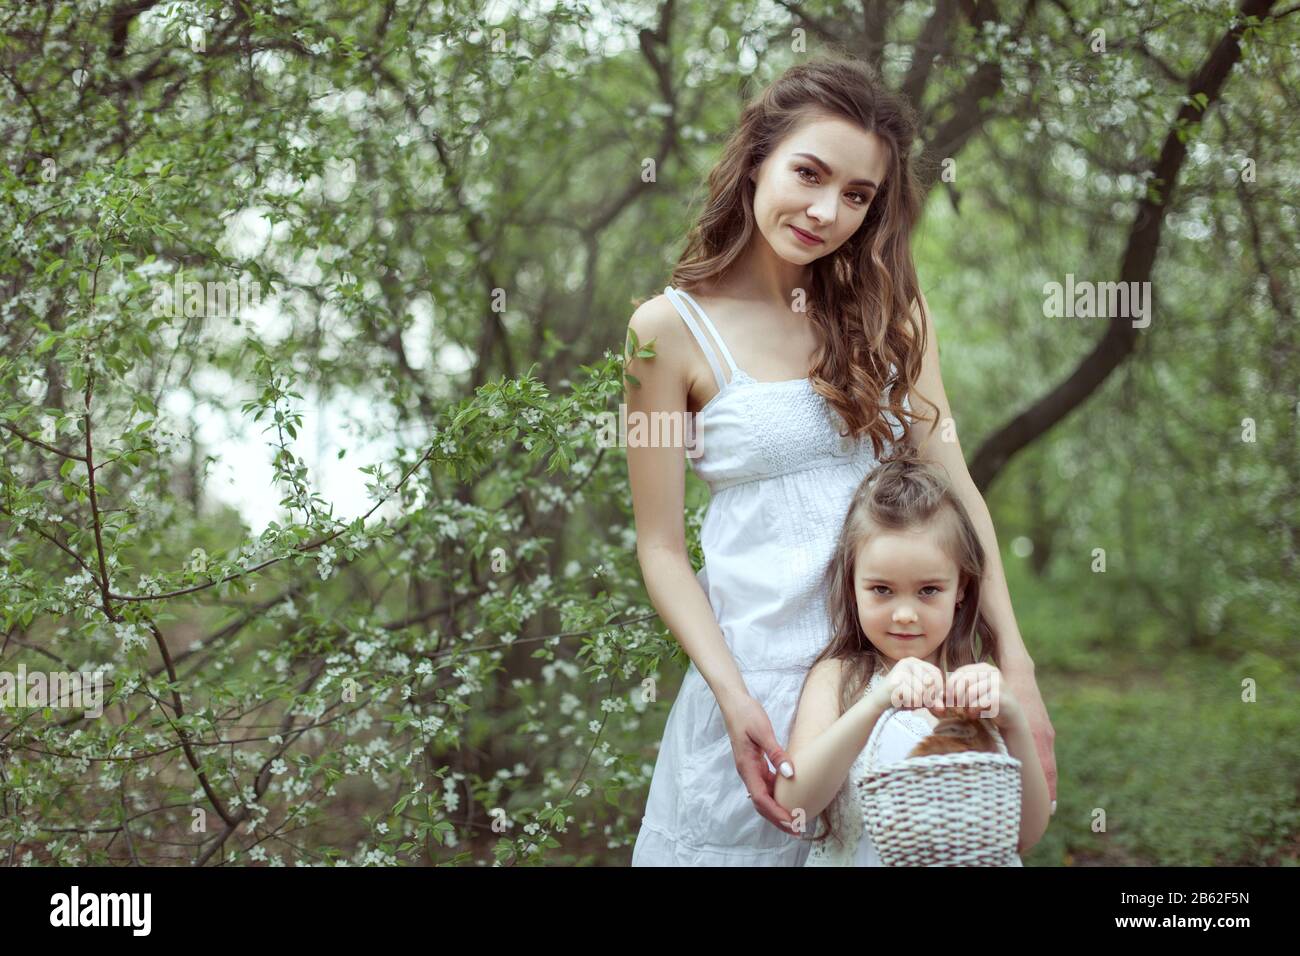 La jeune belle mère et sa fille sont debout dans la forêt. L'enfant tient un panier avec un lapin. Banque D'Images